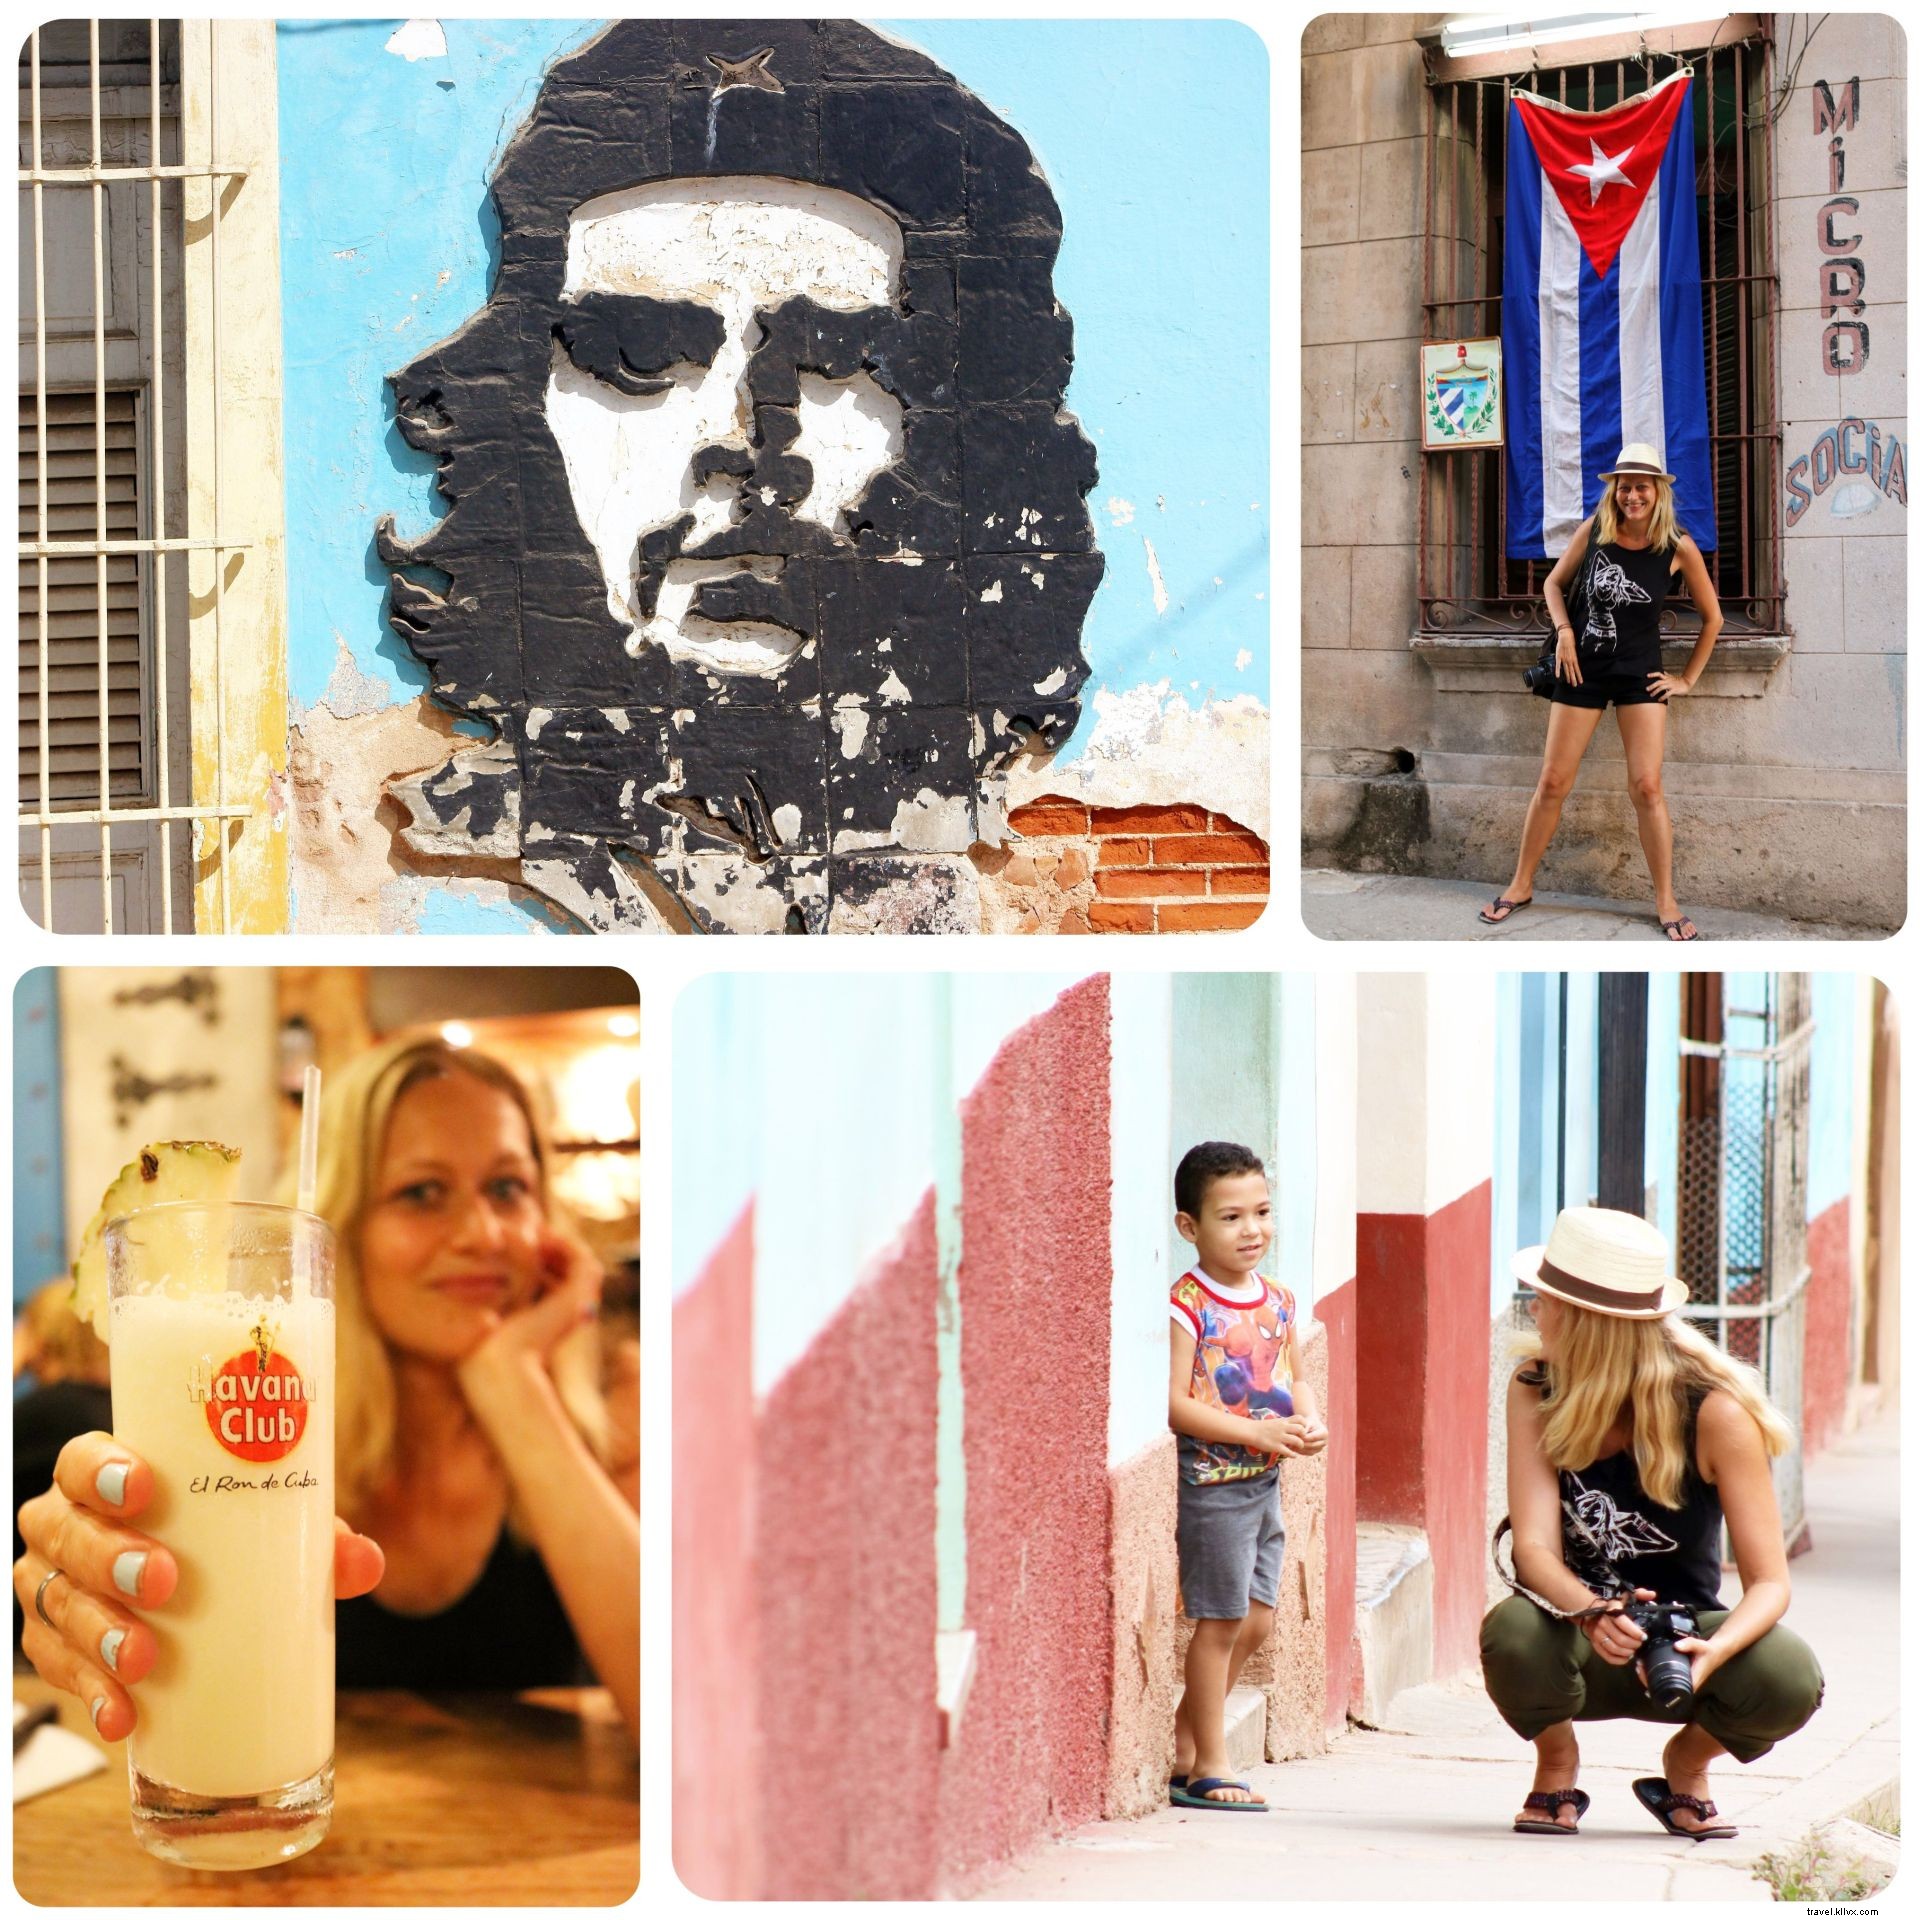 Kuba:10 Hal Yang Perlu Diketahui Sebelum Anda Pergi